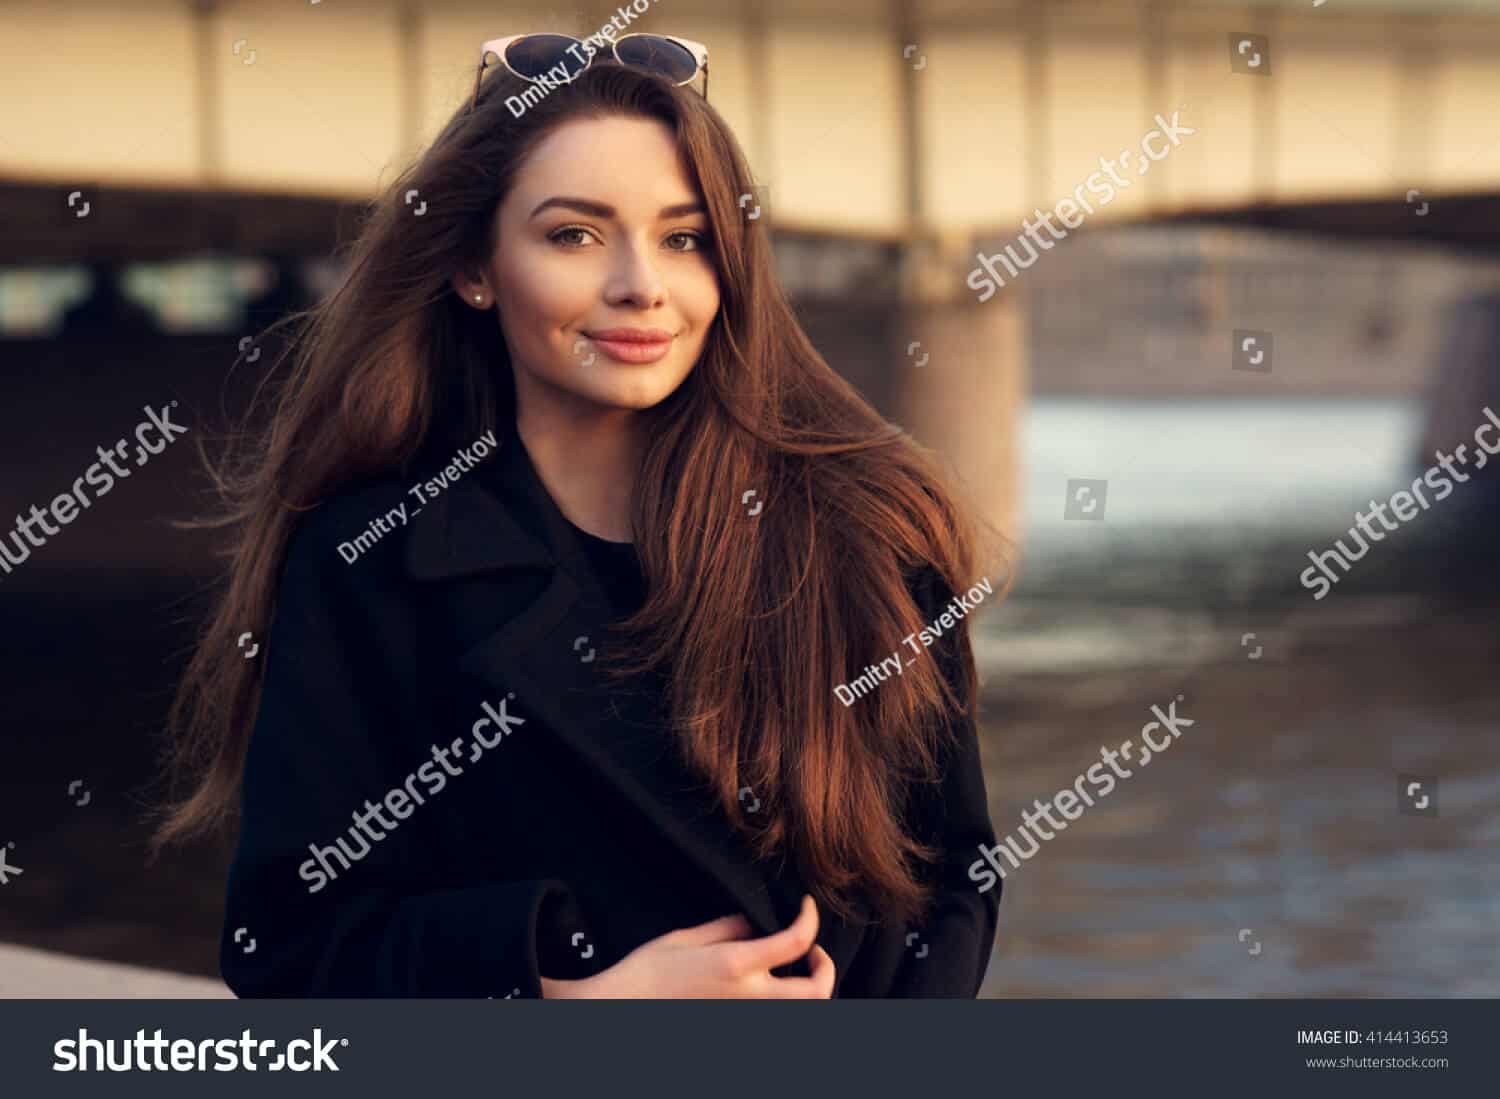 1 triệu 800 ngàn hình ảnh cô gái tóc dài chất lượng cao trên Shutterstock